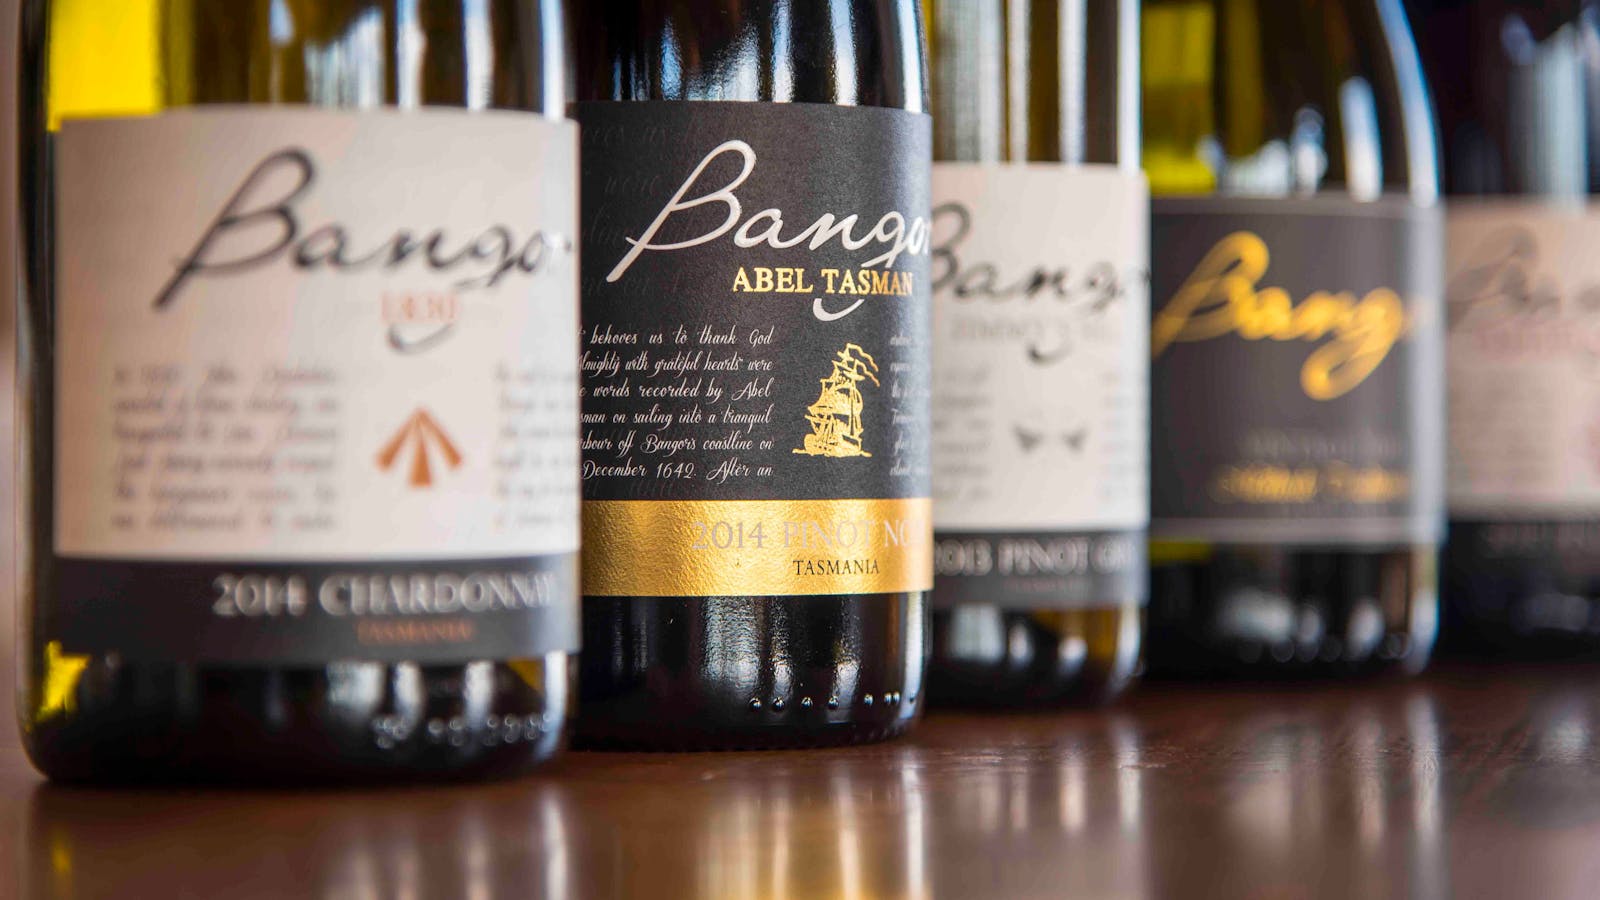 Bangor Wines